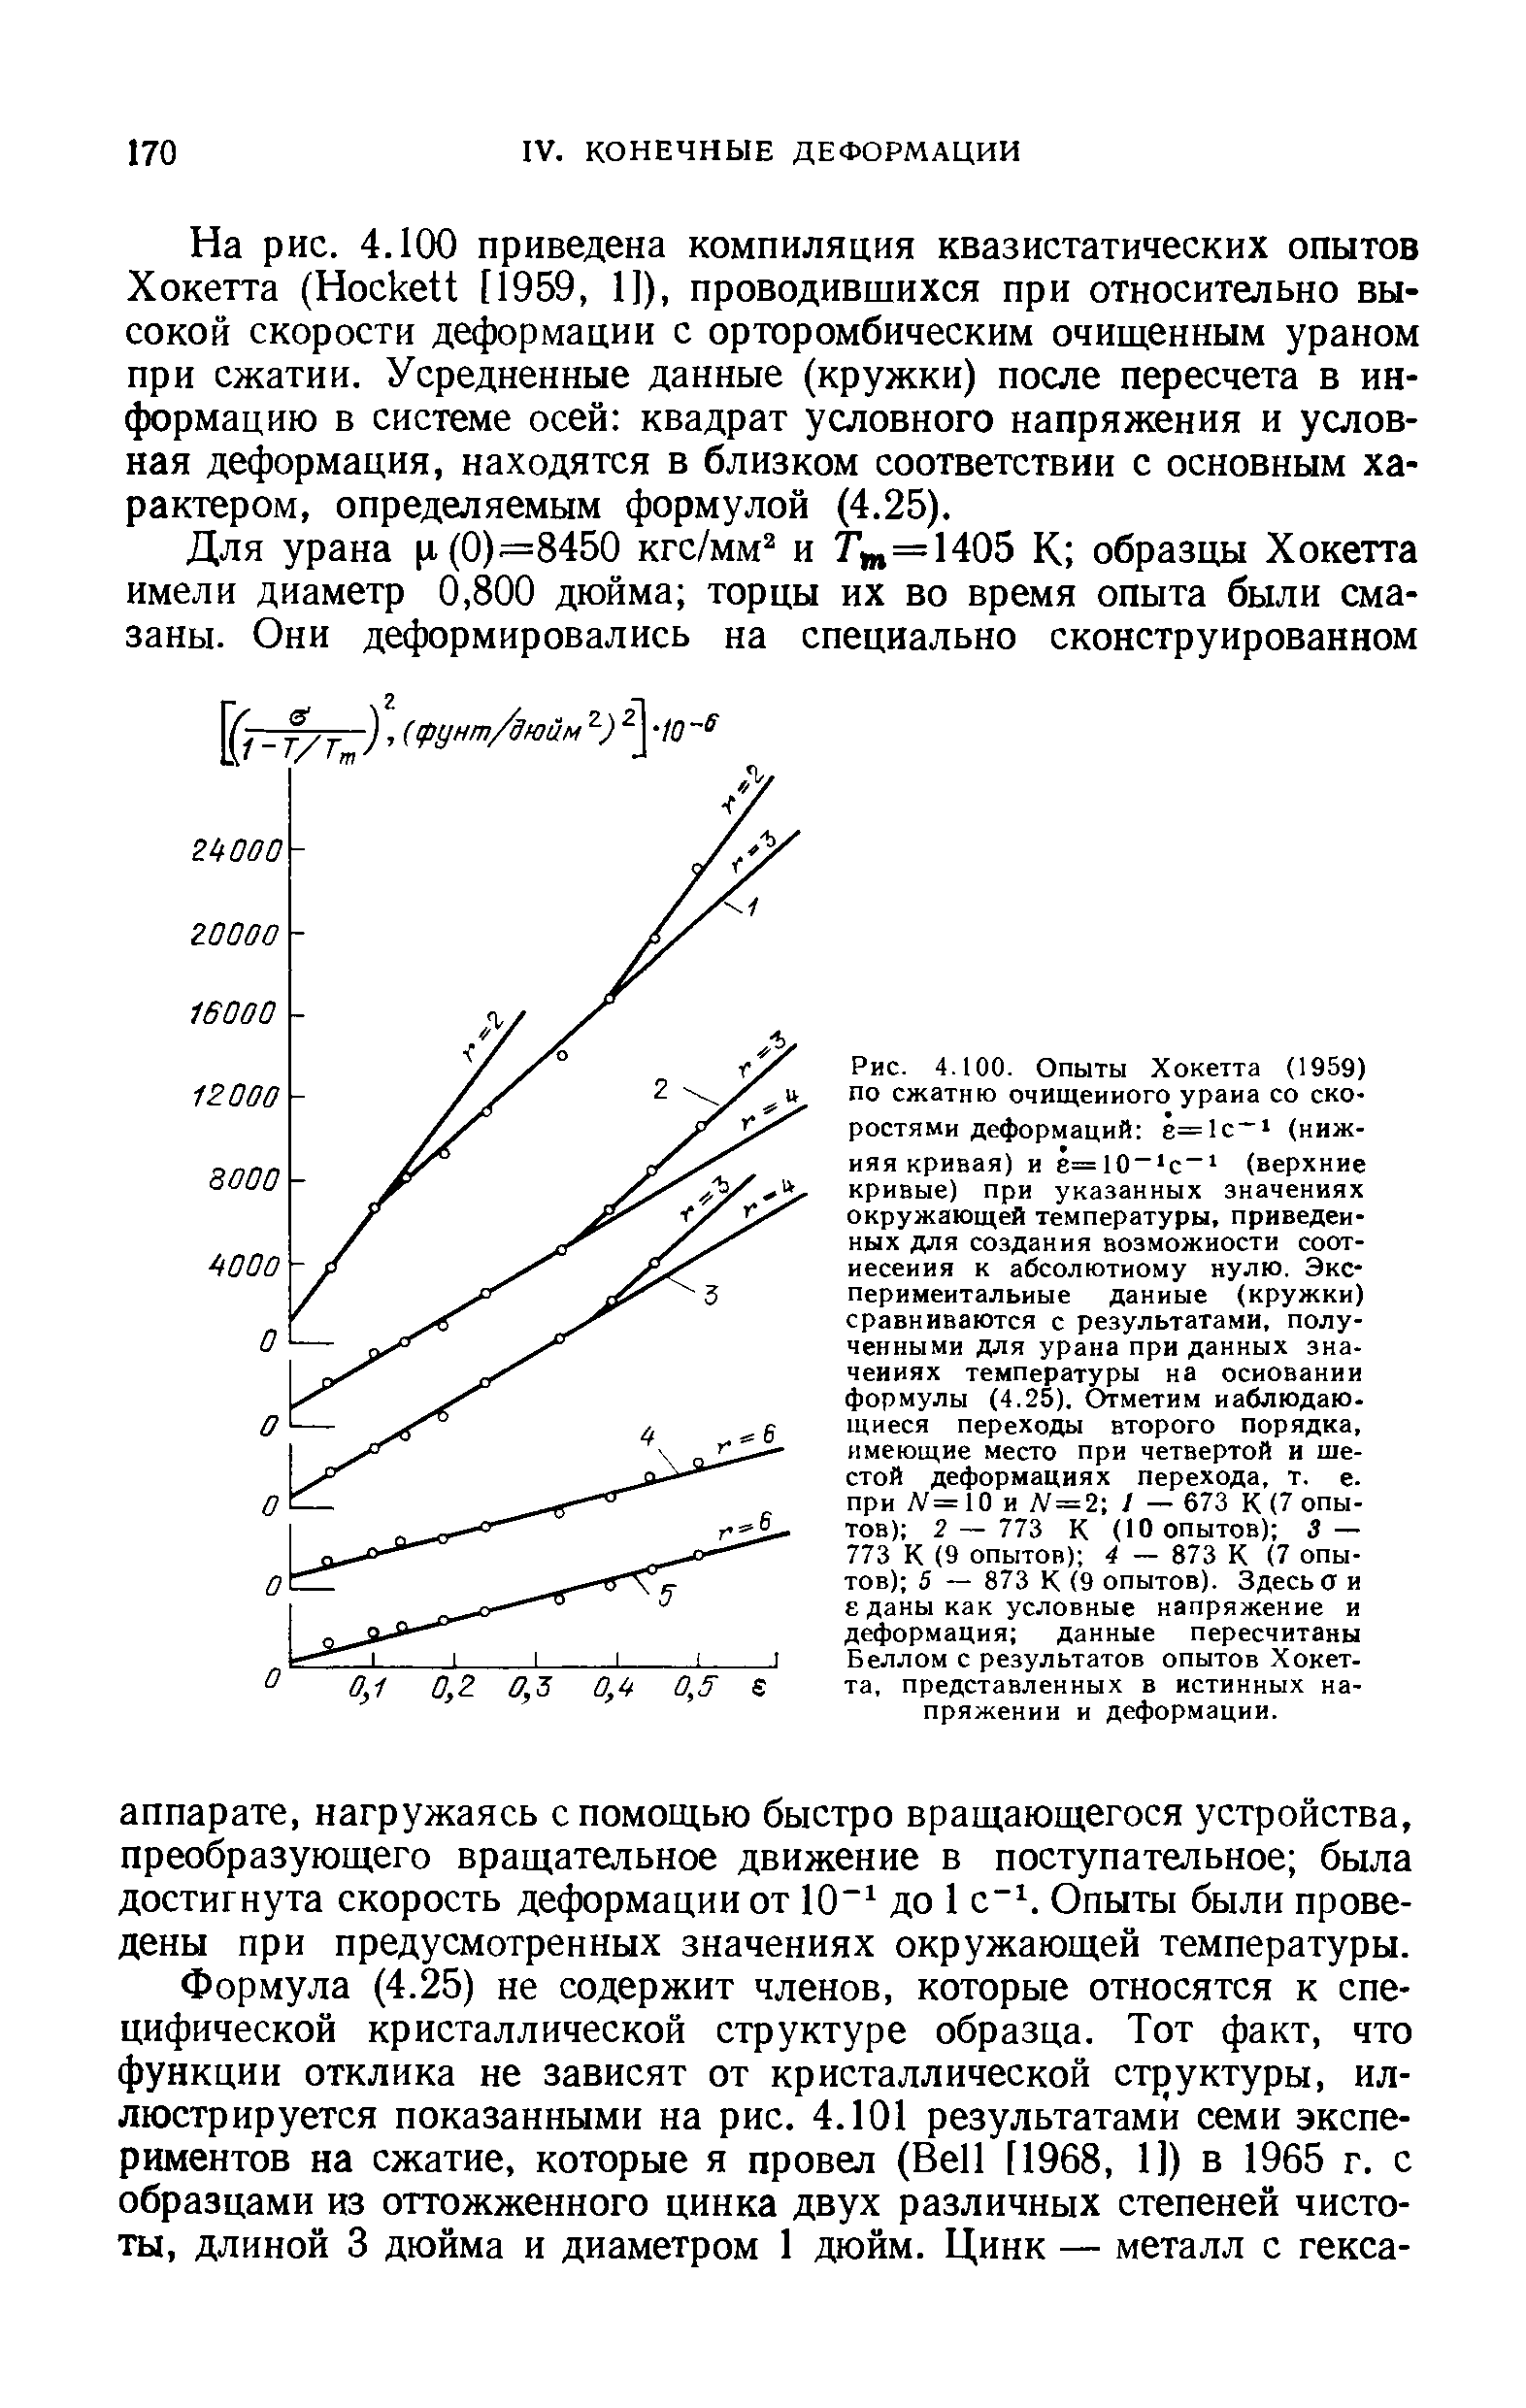 Рис. 4.100. Опыты Хокетта (1959) ПО сжатию очищенного урана со ско ростями деформаций ё=1с (нижняя кривая) и е=10 с (верхние кривые) при указанных значениях окружающей температуры, приведенных для создания возможности соотнесения к абсолютному нулю. Экспериментальные данные (кружкн) сравниваются с результатами, полученными для урана при данных значениях температуры на основании формулы (4.25). Отметим наблюдающиеся переходы второго порядка, имеющие место при четвертой и шестой деформациях перехода, т. е. при Л =10 и Л = 2 / — 673 К (7 опытов) 2 — 773 К (10 опытов) S — 773 К (9 опытов) 4 — 873 К (7 опытов) 5 — 873 К (9 опытов). Здесь а и еданы как условные напряжение и деформация данные пересчитаны Беллом с результатов опытов Хокетта, представленных в истинных напряжении и деформации.
